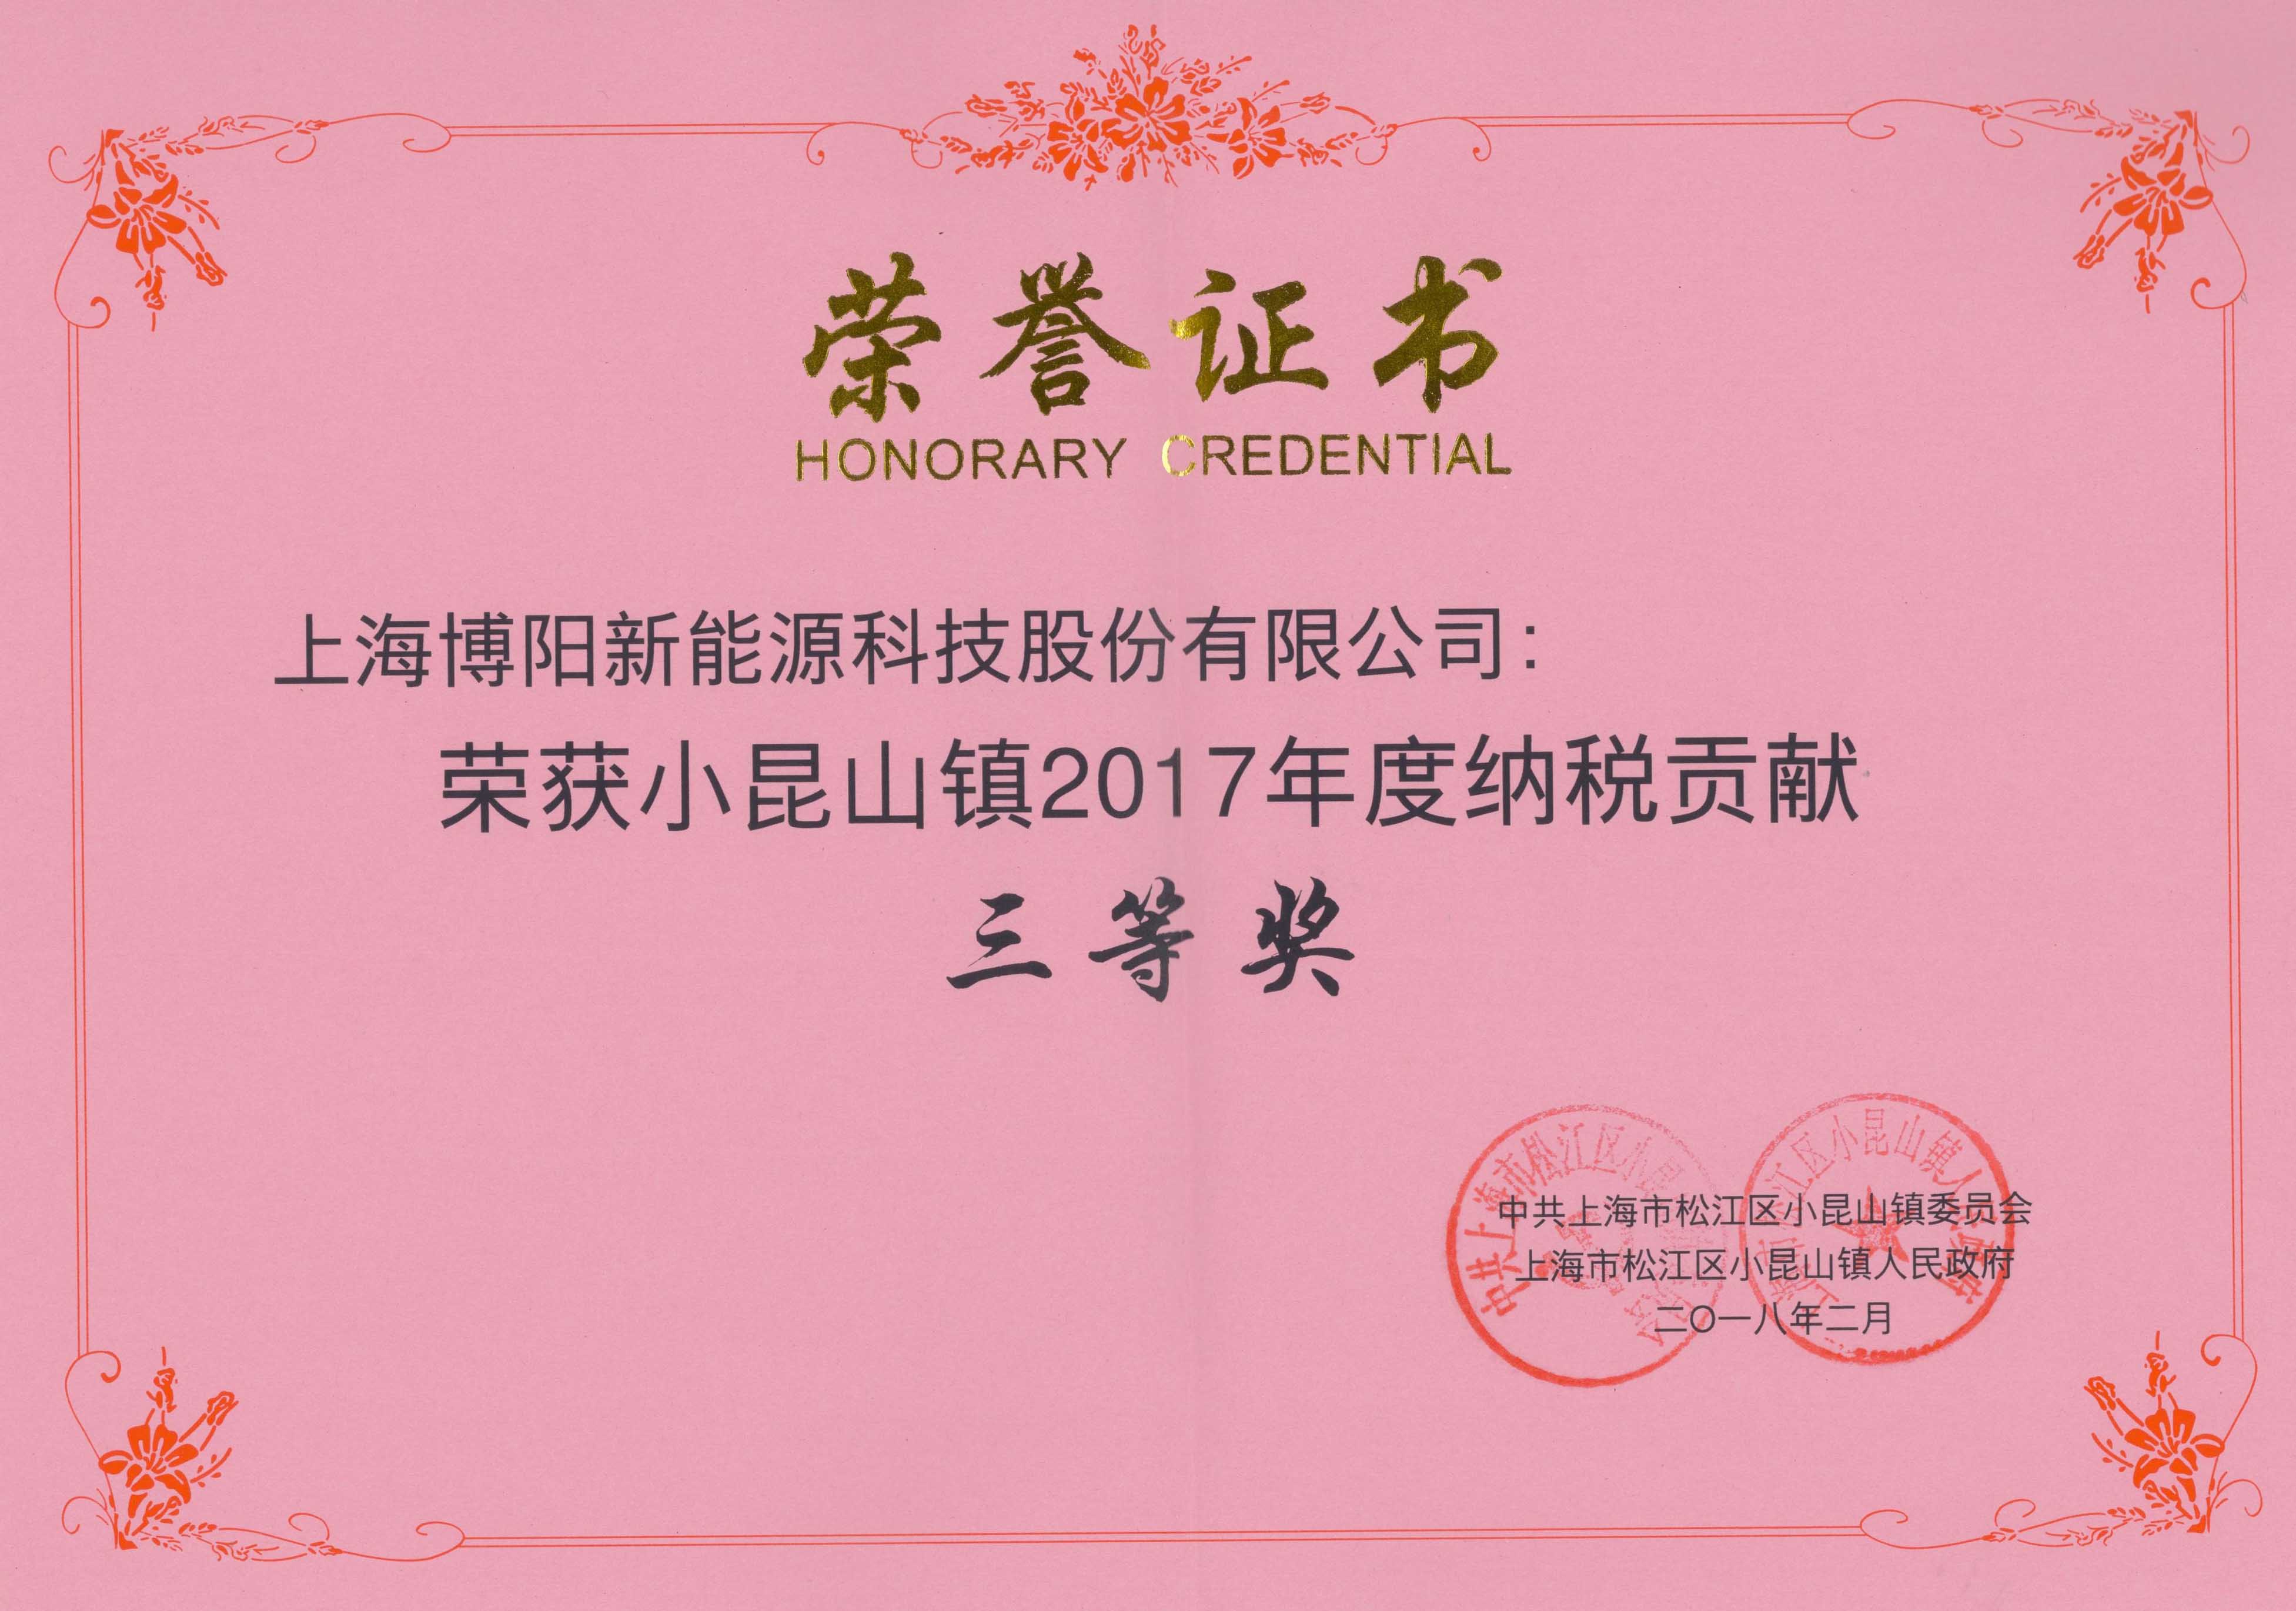 喜讯频传，88805tccn新蒲京荣获 ”2017年度纳税贡献奖”